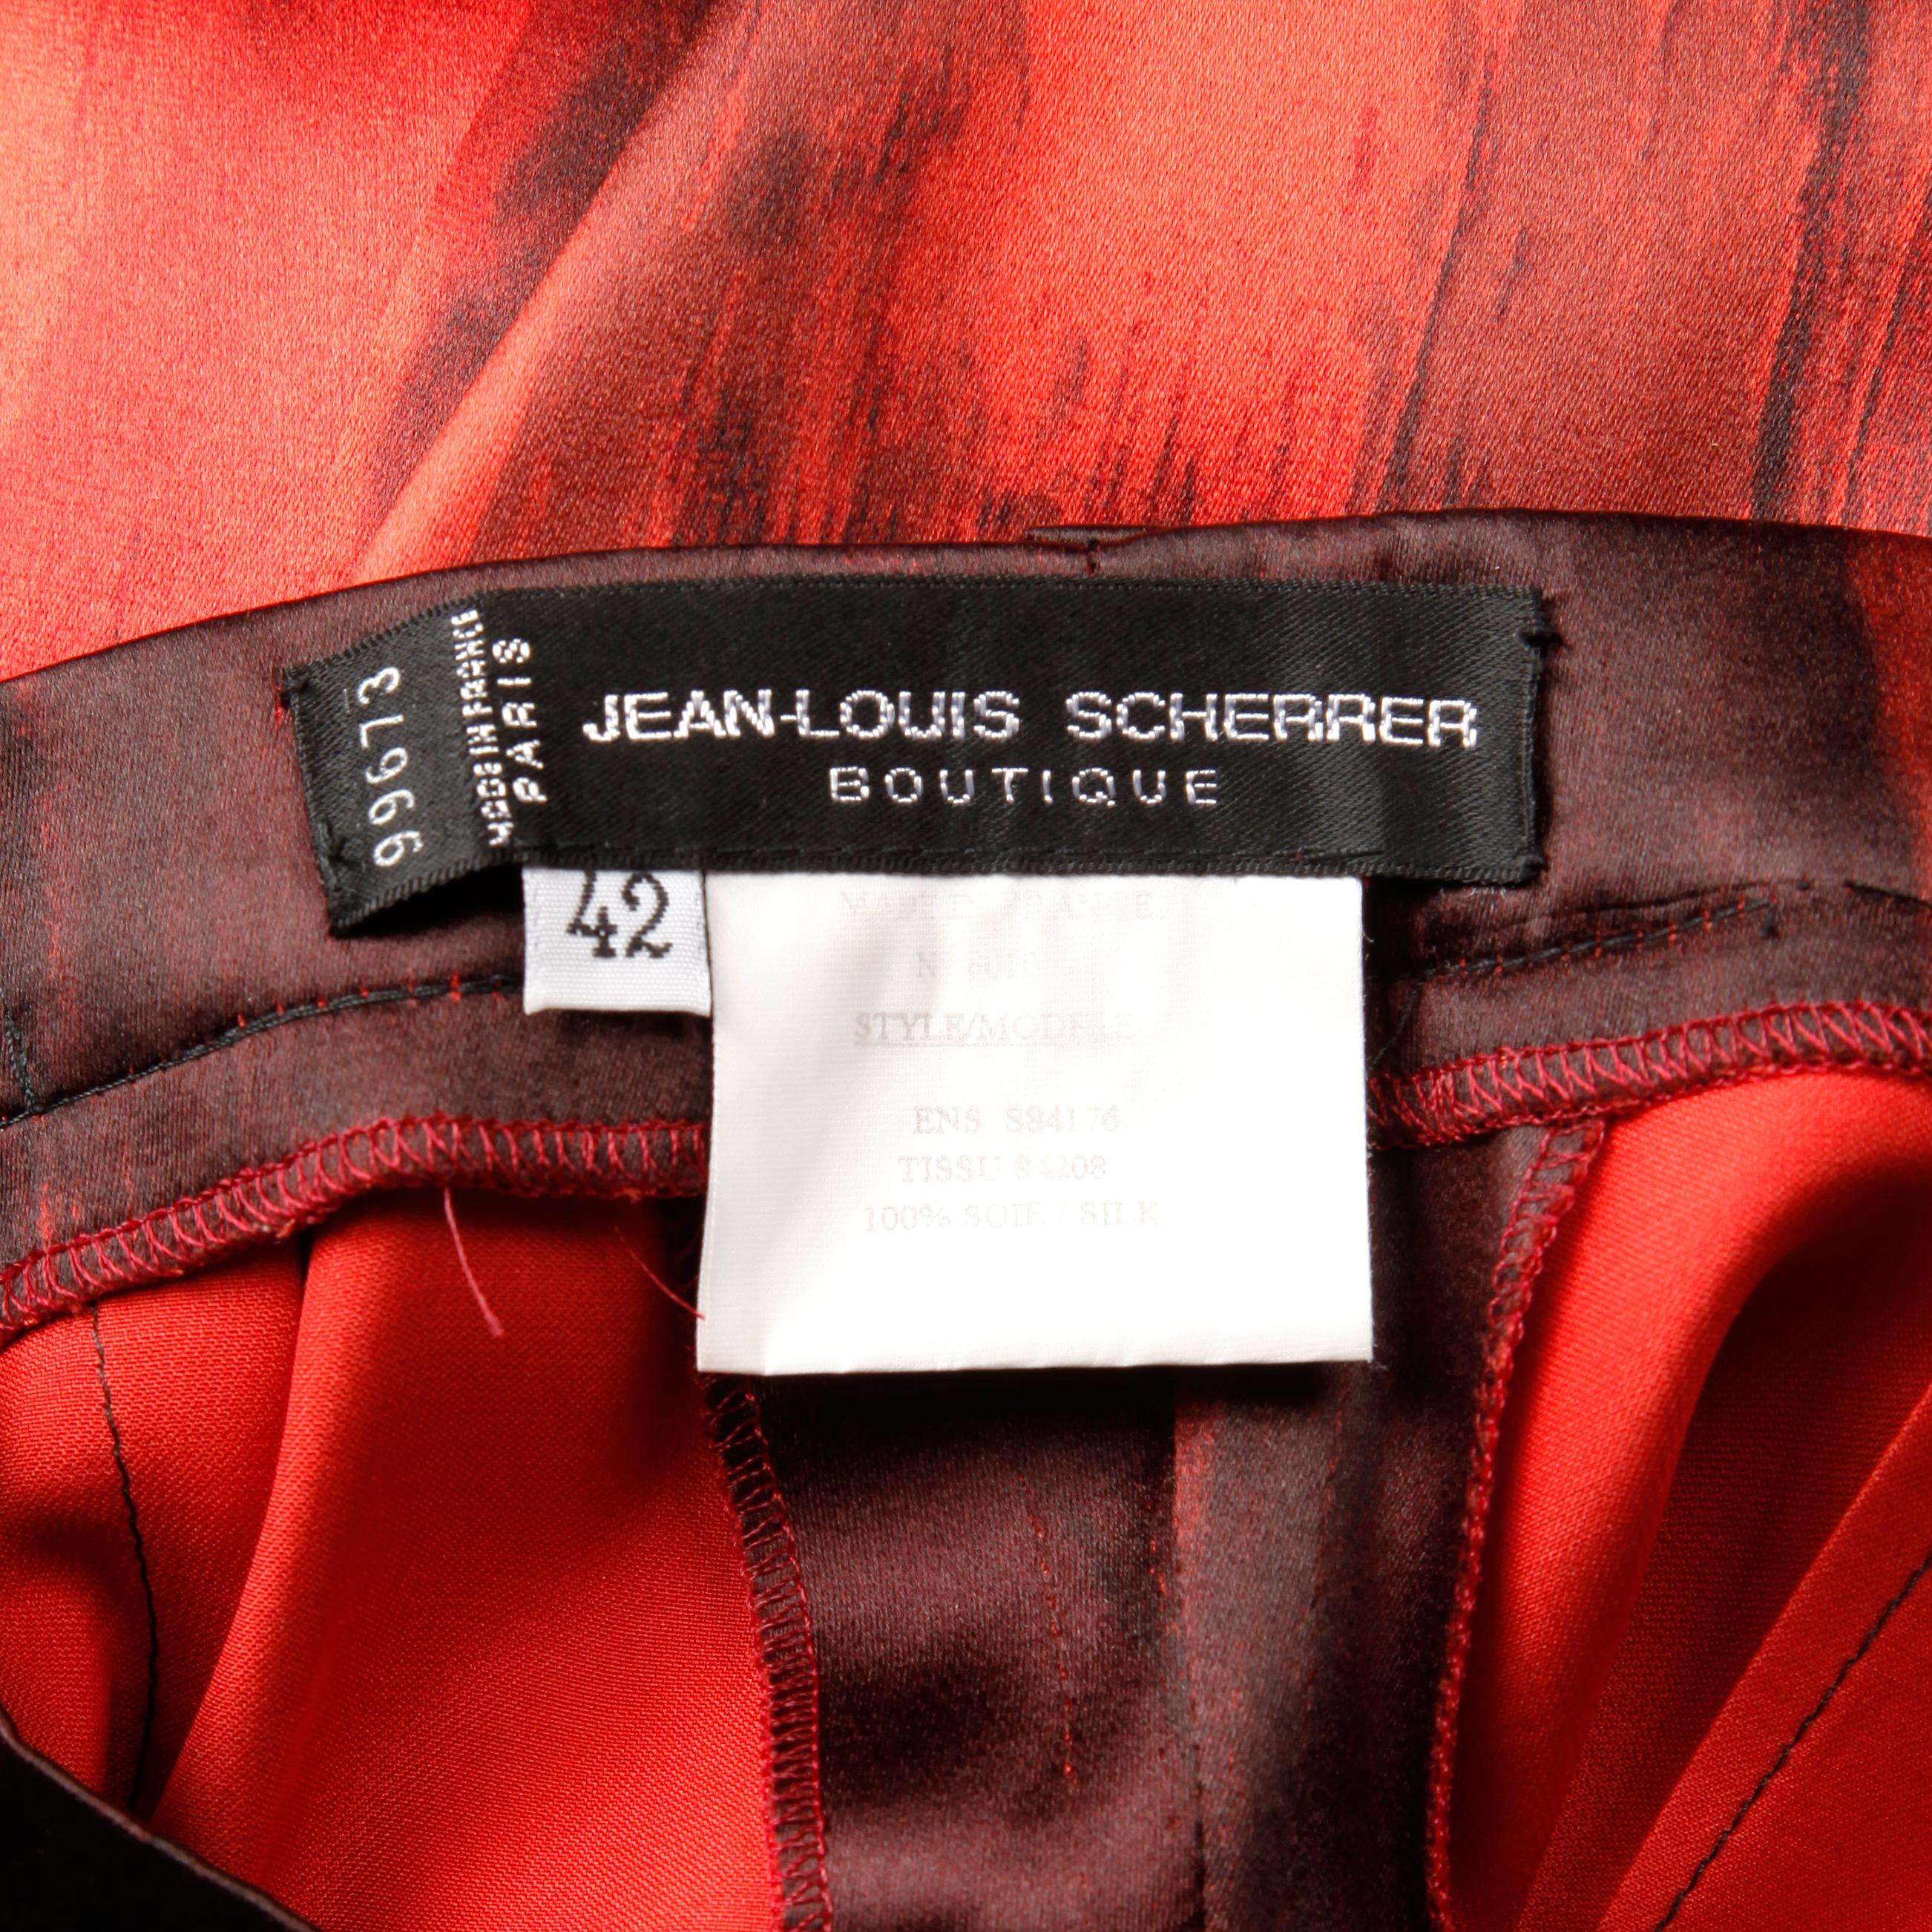 Nummer Vintage Couture aus den 1990er Jahren von Jean-Louis Scherrer! Handbemalte rote und schwarze Seidenhose. Ungefüttert mit seitlichem Reißverschluss und Knopfverschluss. Versteckte Vordertaschen. Die angegebene Größe ist 42, und die Hose passt